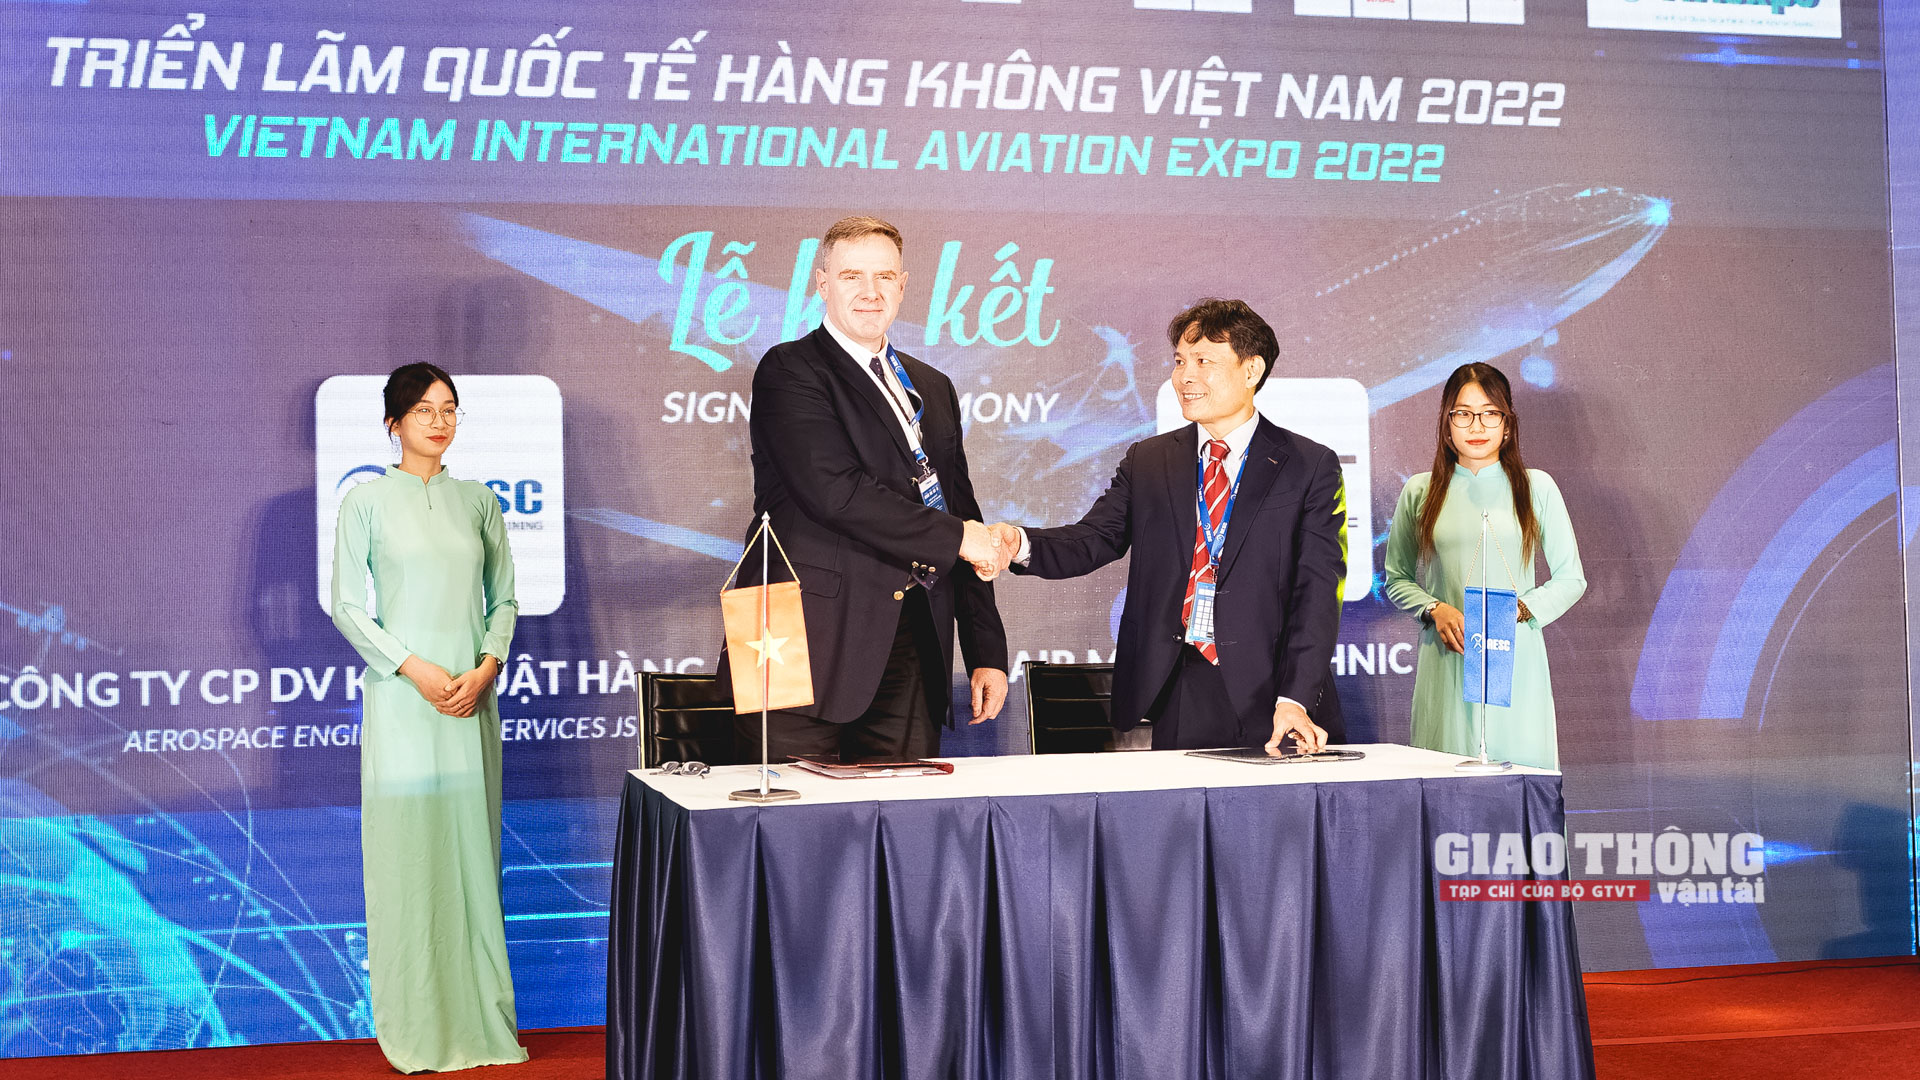 Ấn tượng Triển lãm Quốc tế Hàng không Việt Nam - VIAE 2022 - Ảnh 5.